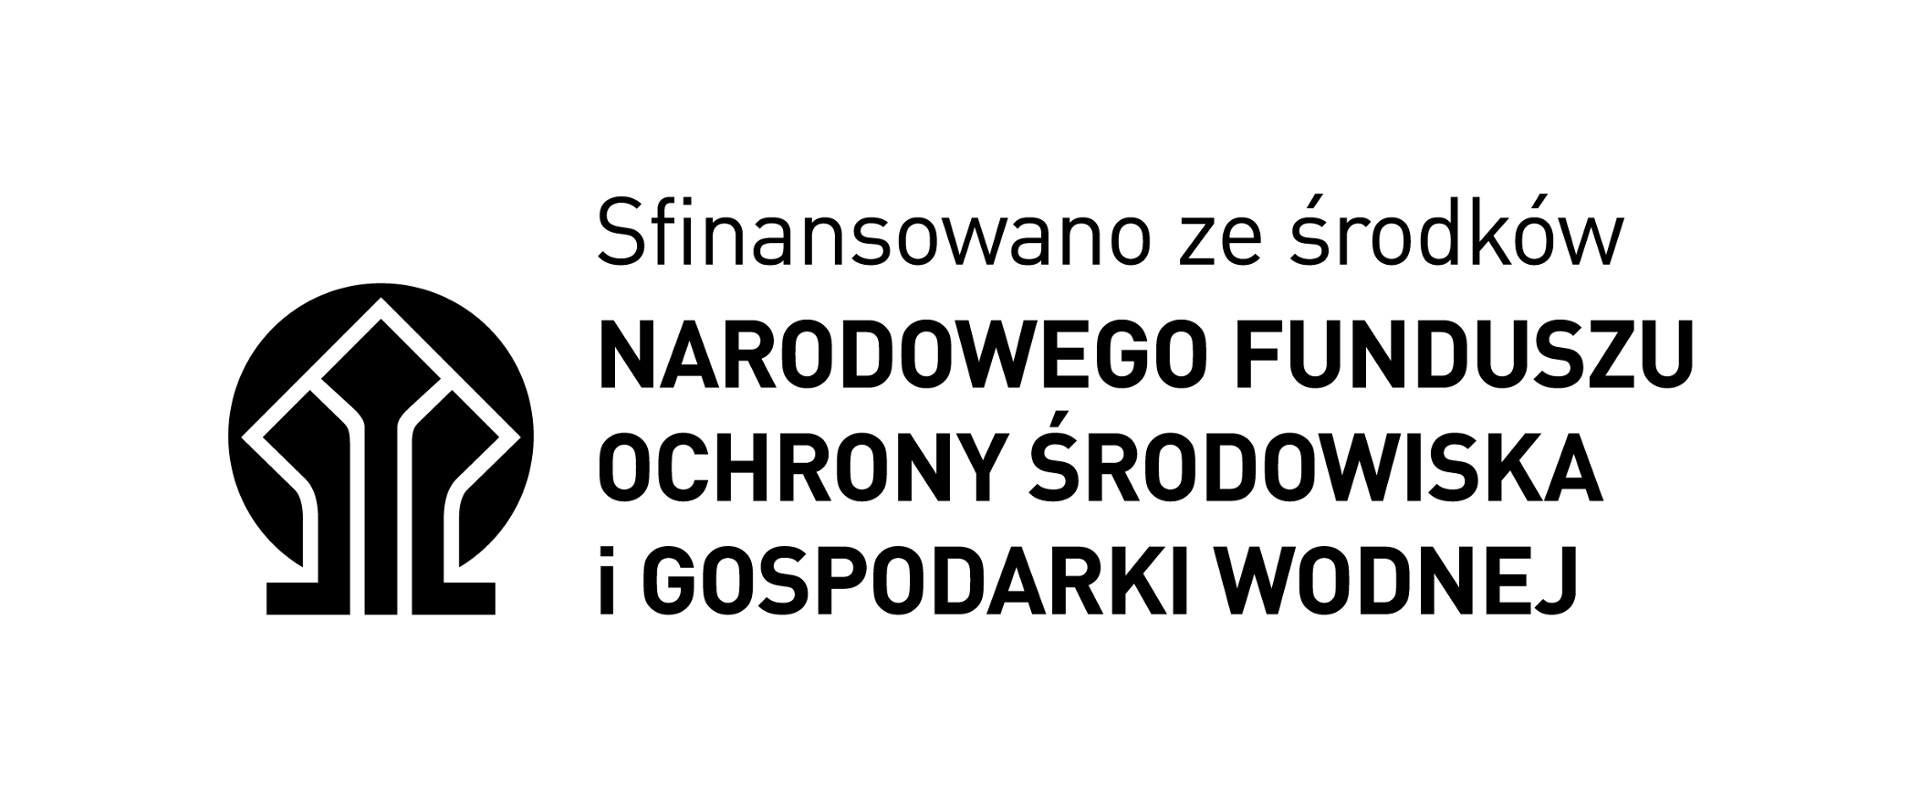 Logo NFOŚiGW - sfinansowano